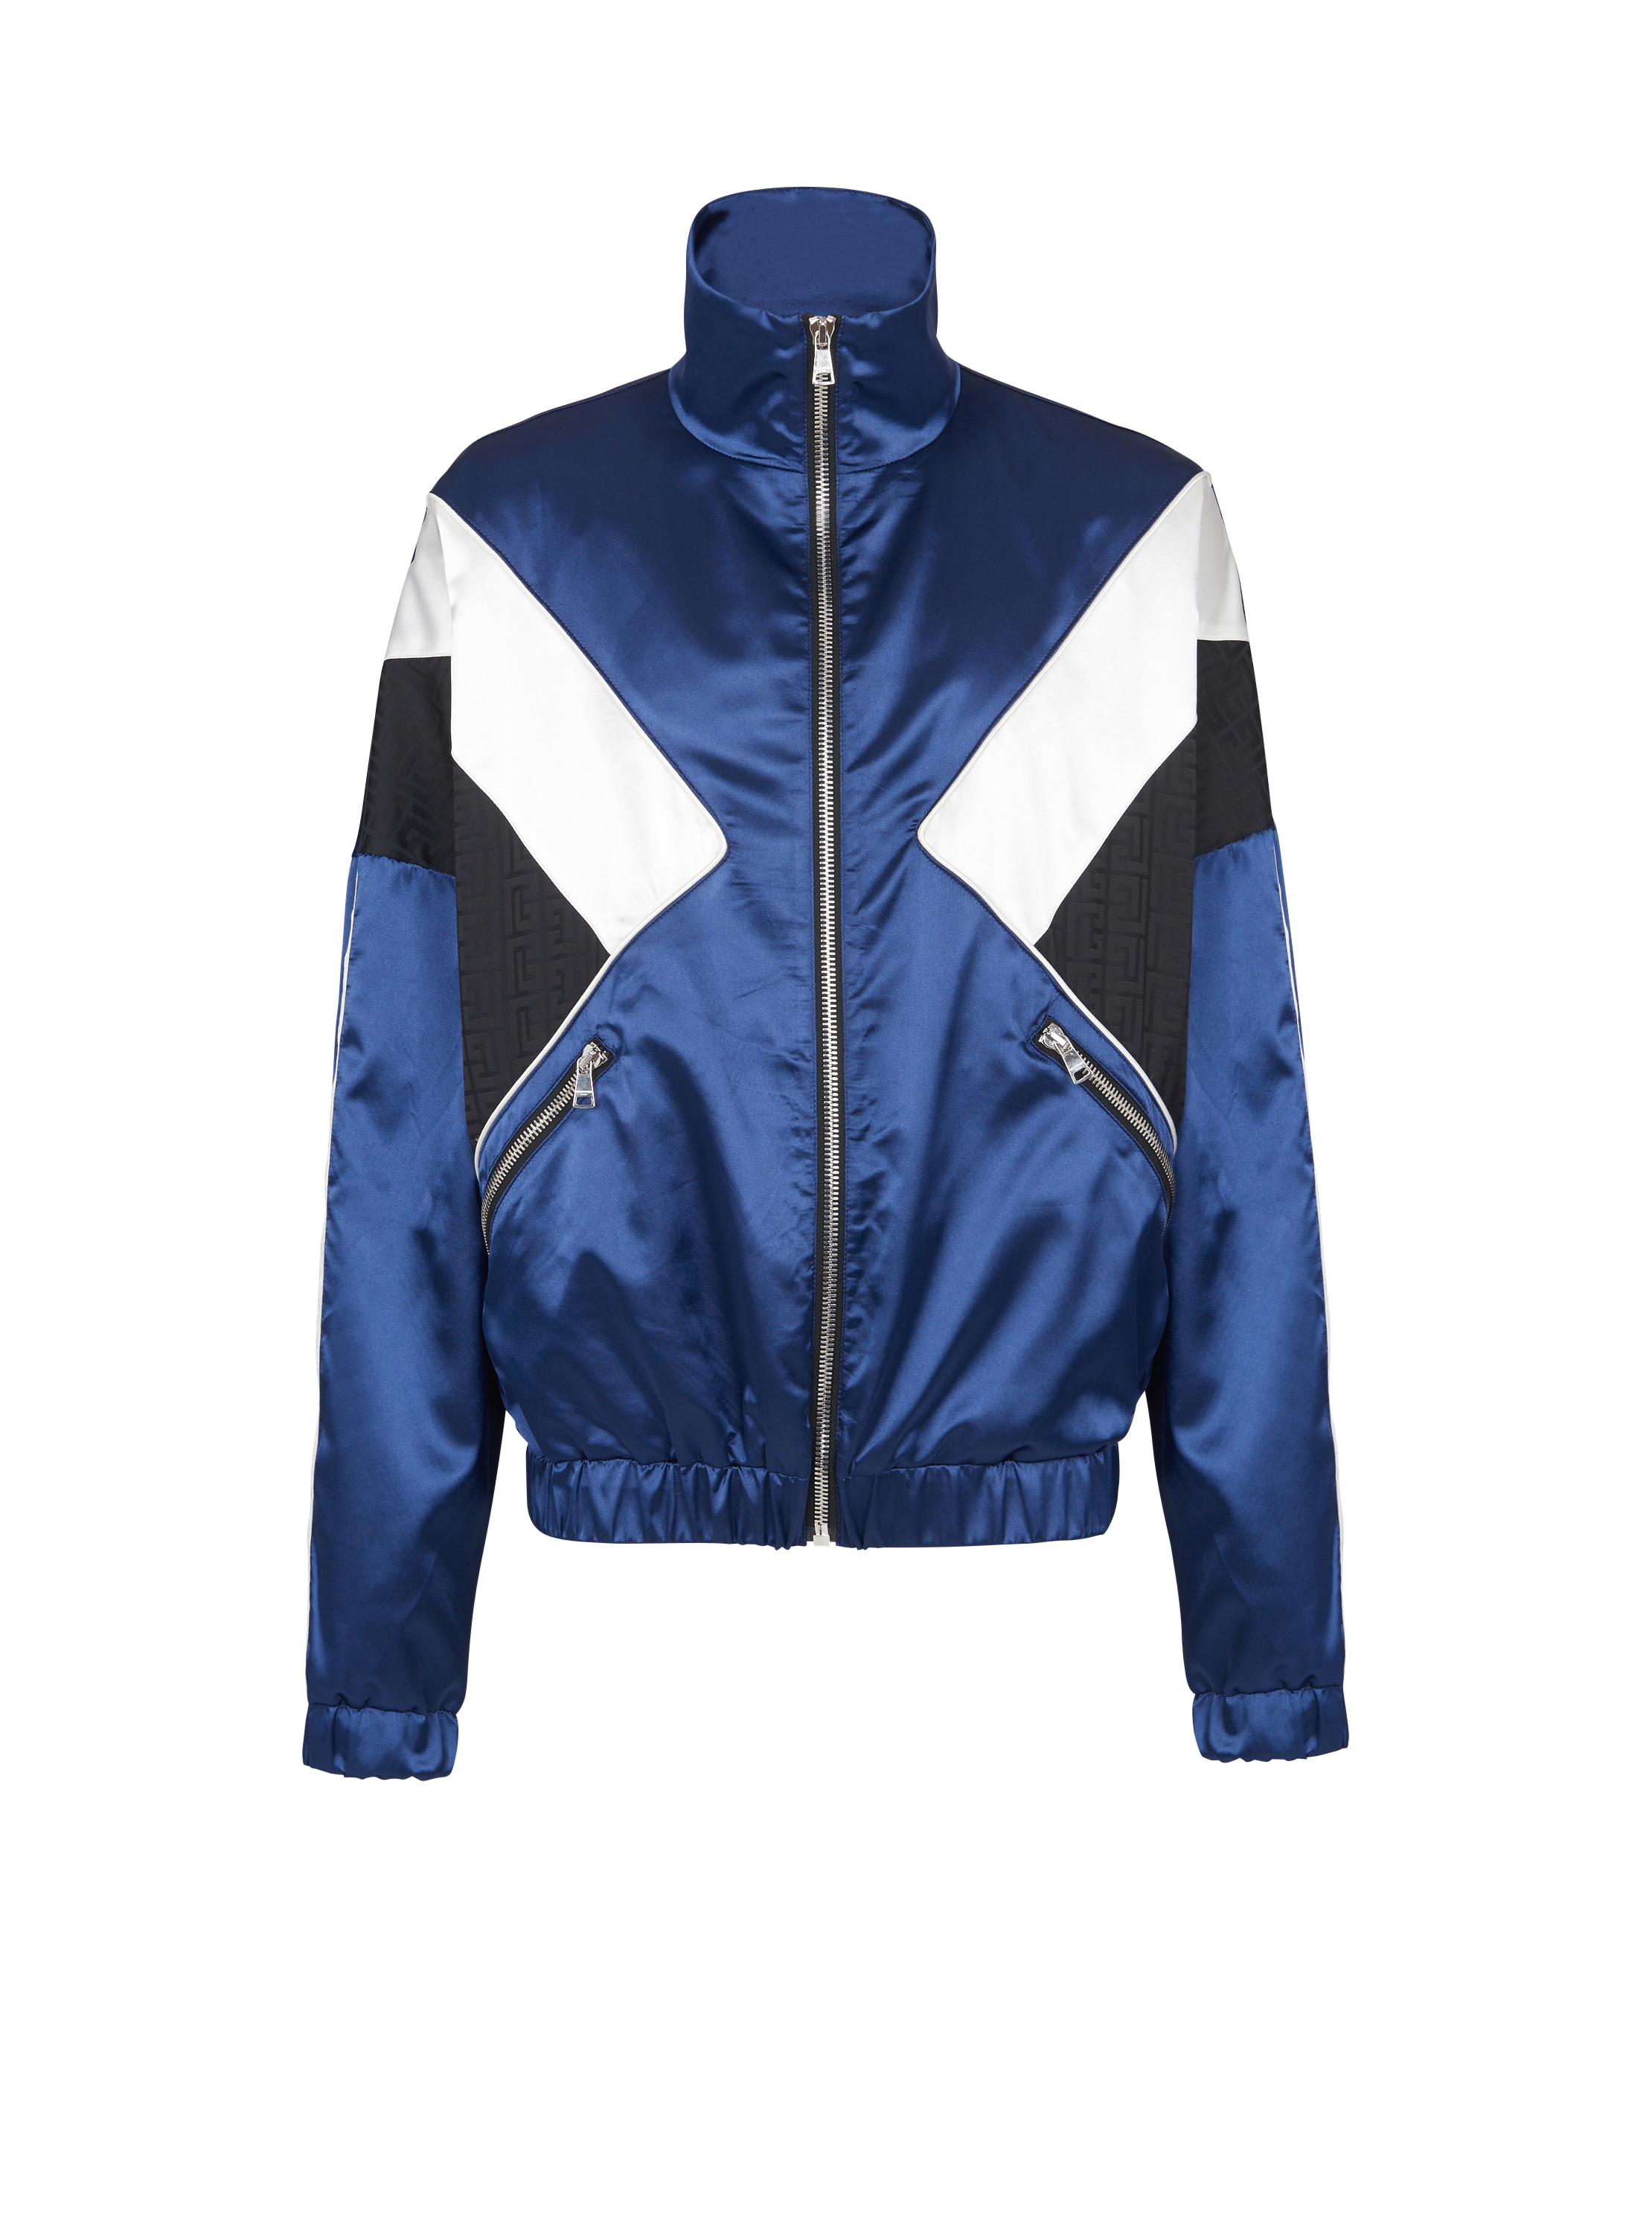 Monogrammed satin jacket, blue, hi-res